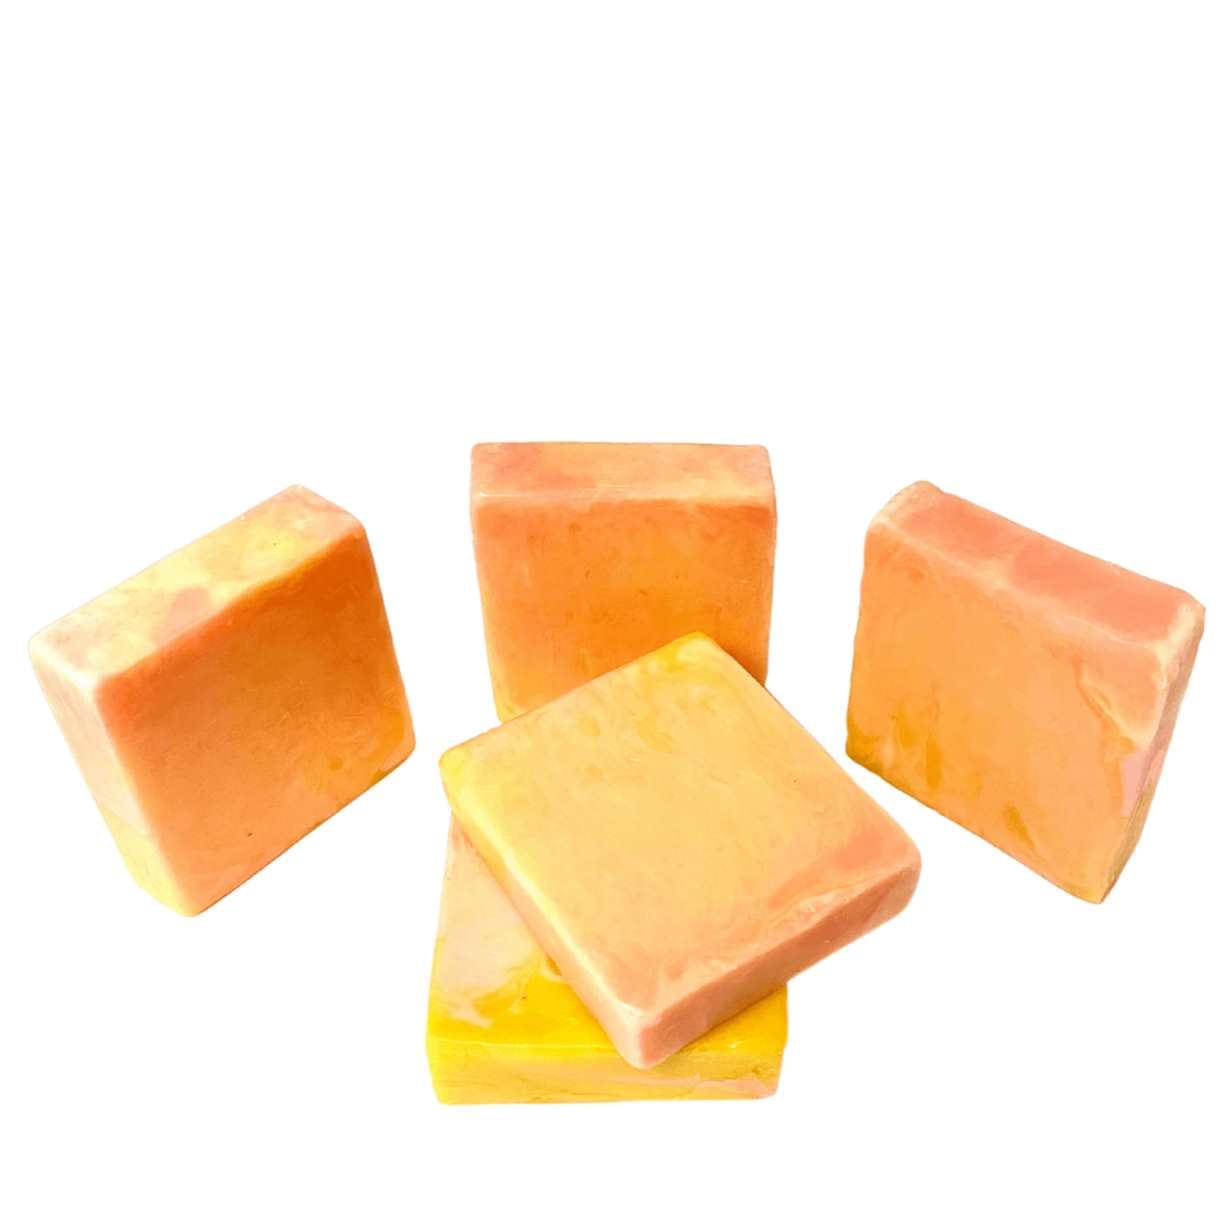 yoni soap bar